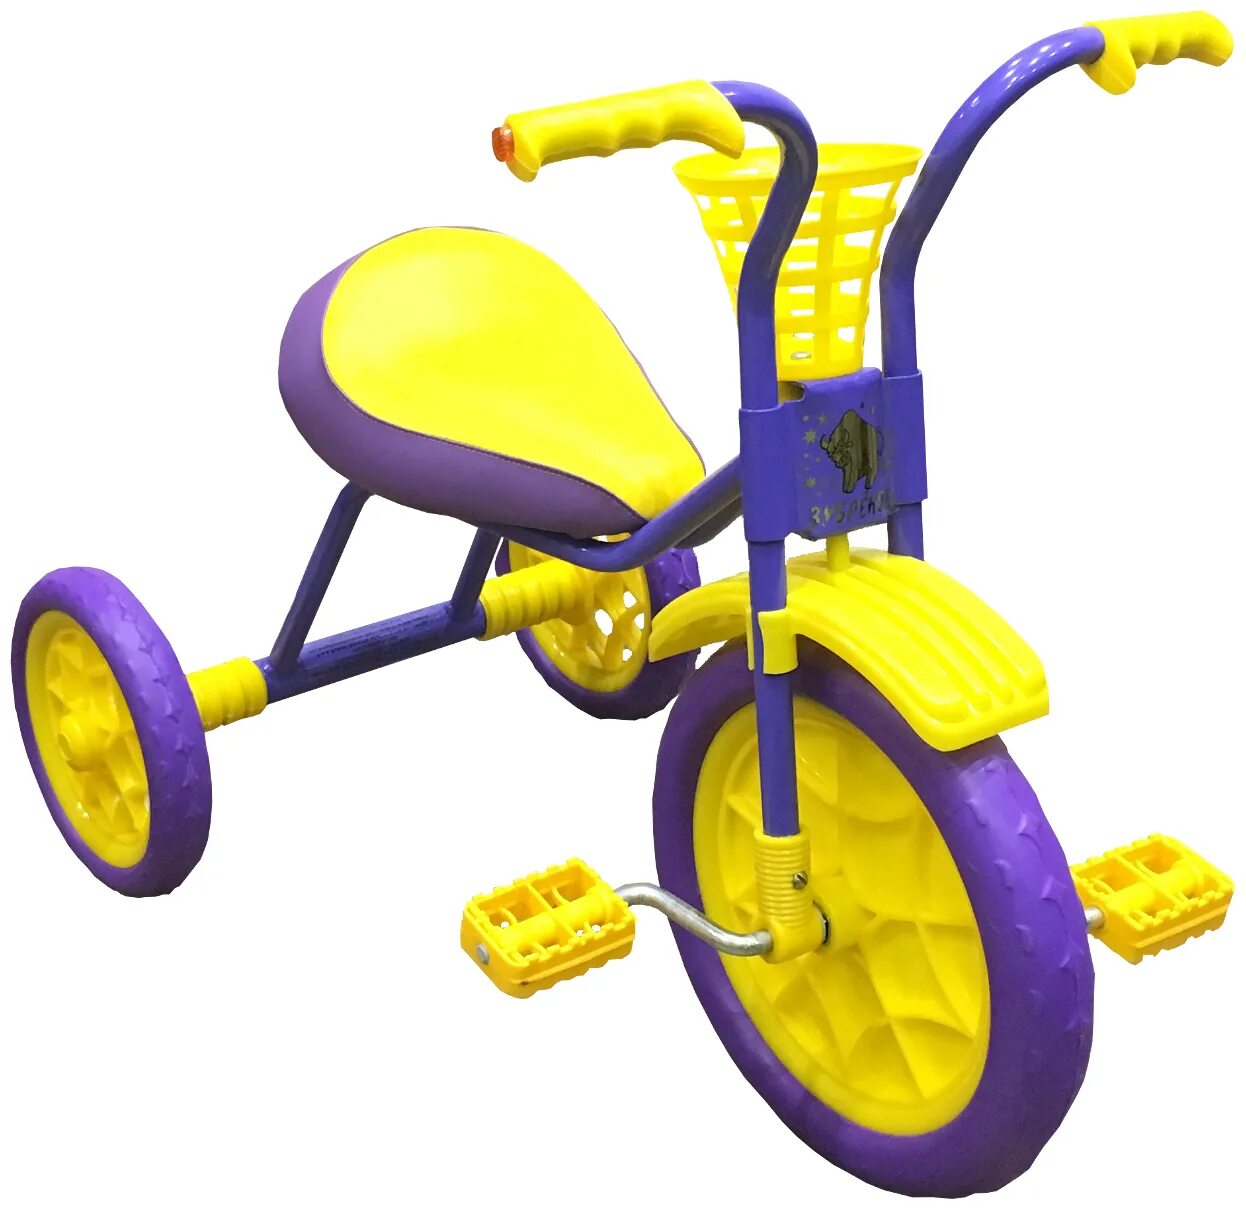 Где купить трехколесный велосипед. Велосипед Зубренок трехколесный. Велосипед TCV 083470 трехколесный. Cuty Raid 2023 велосипед трёхколёсный. Трехколесный велосипед Ocie c201-2.